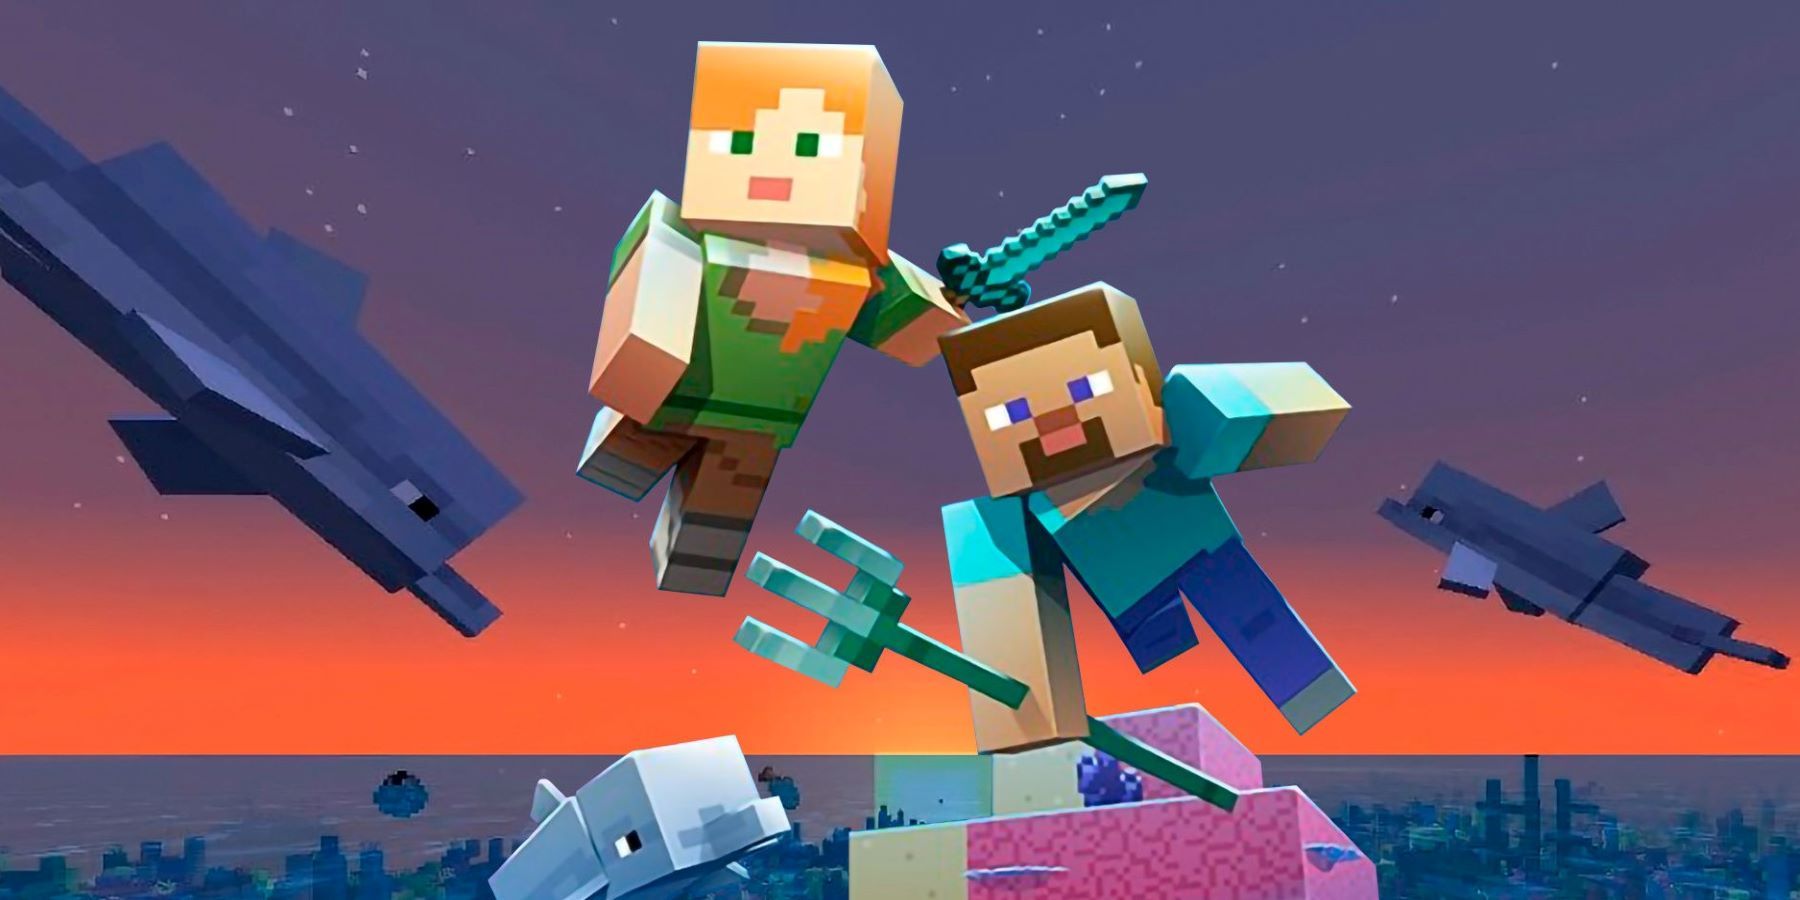 Промо-арт для Minecraft Update Aquatic, изображающий Стива и Алекса, плавающих с трезубцем и несколькими дельфинами на коралловом рифе.